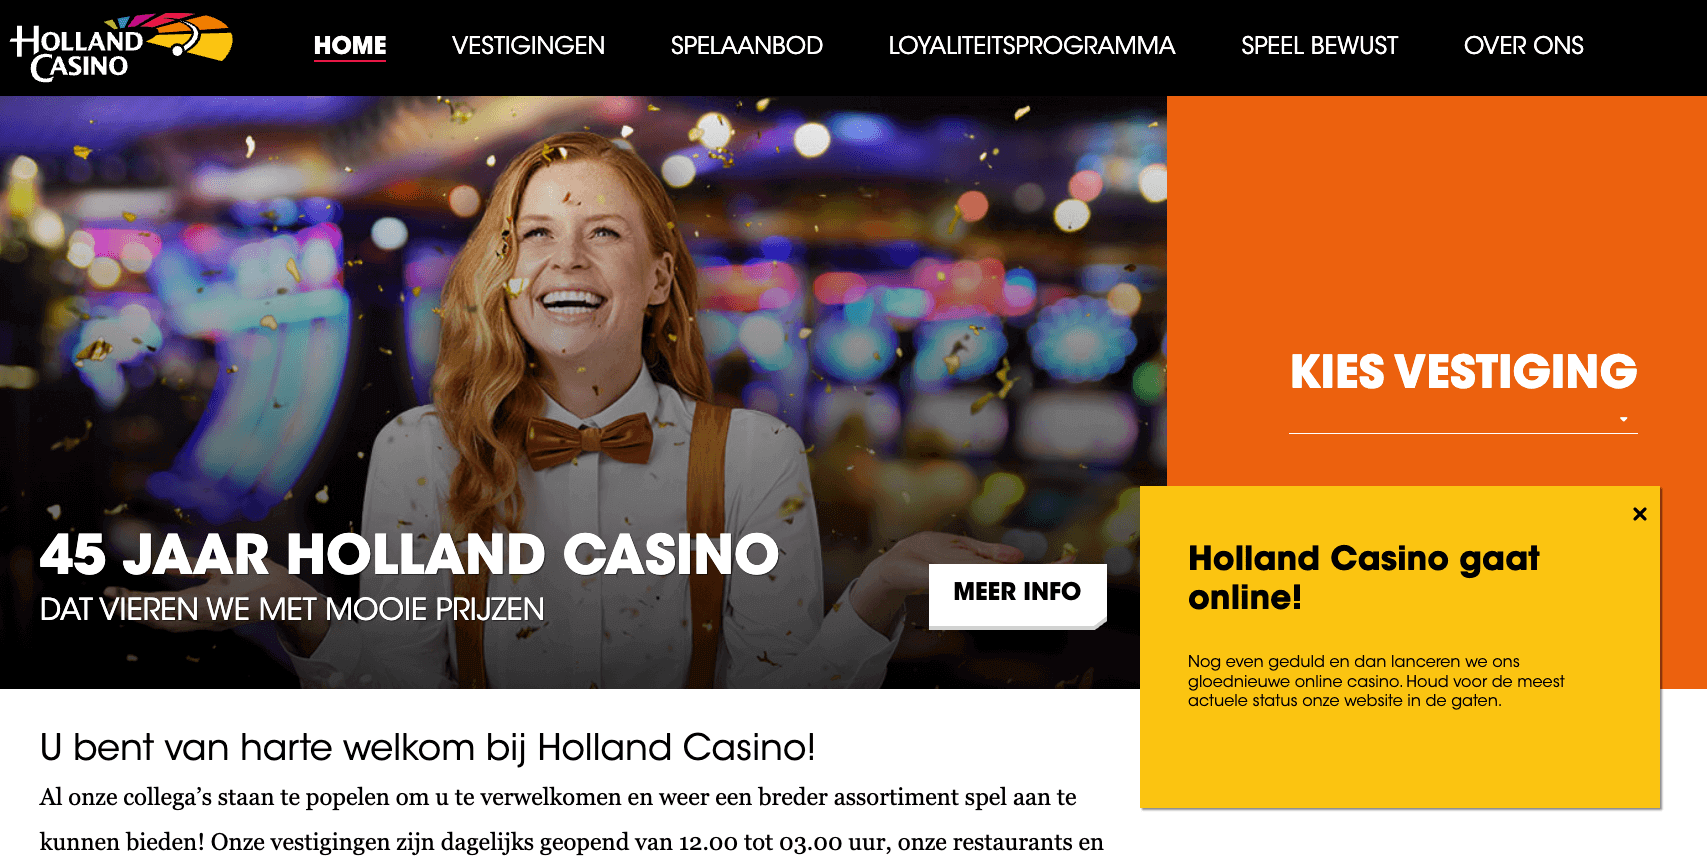 Nederlandse online markt is open, maar alle casino’s onbereikbaar